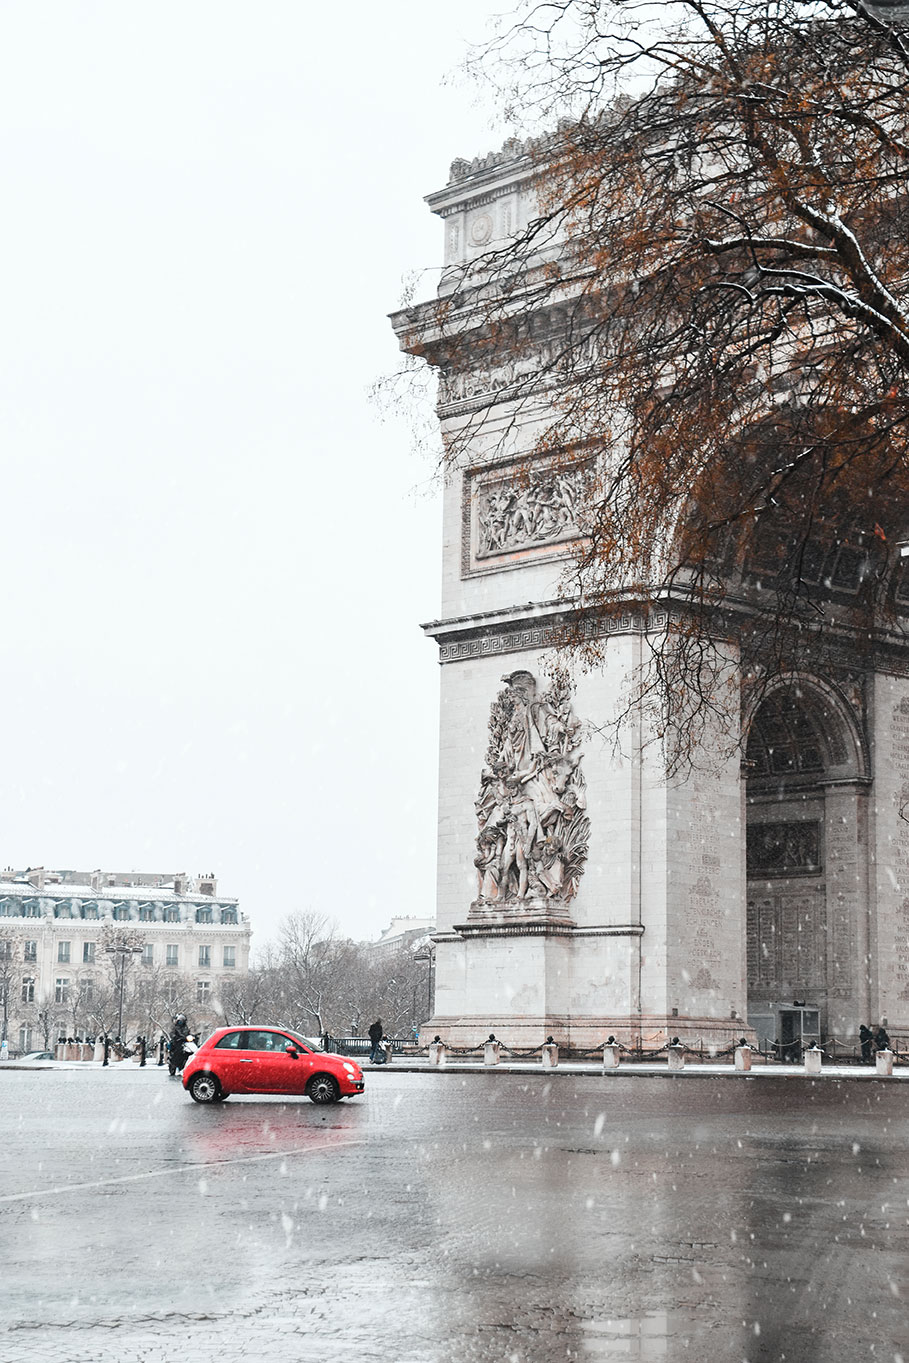 Arc de Tromphe at Place Charles de Gaulle Etoile under snowfall, Paris, France 2021 (Nos Dren).